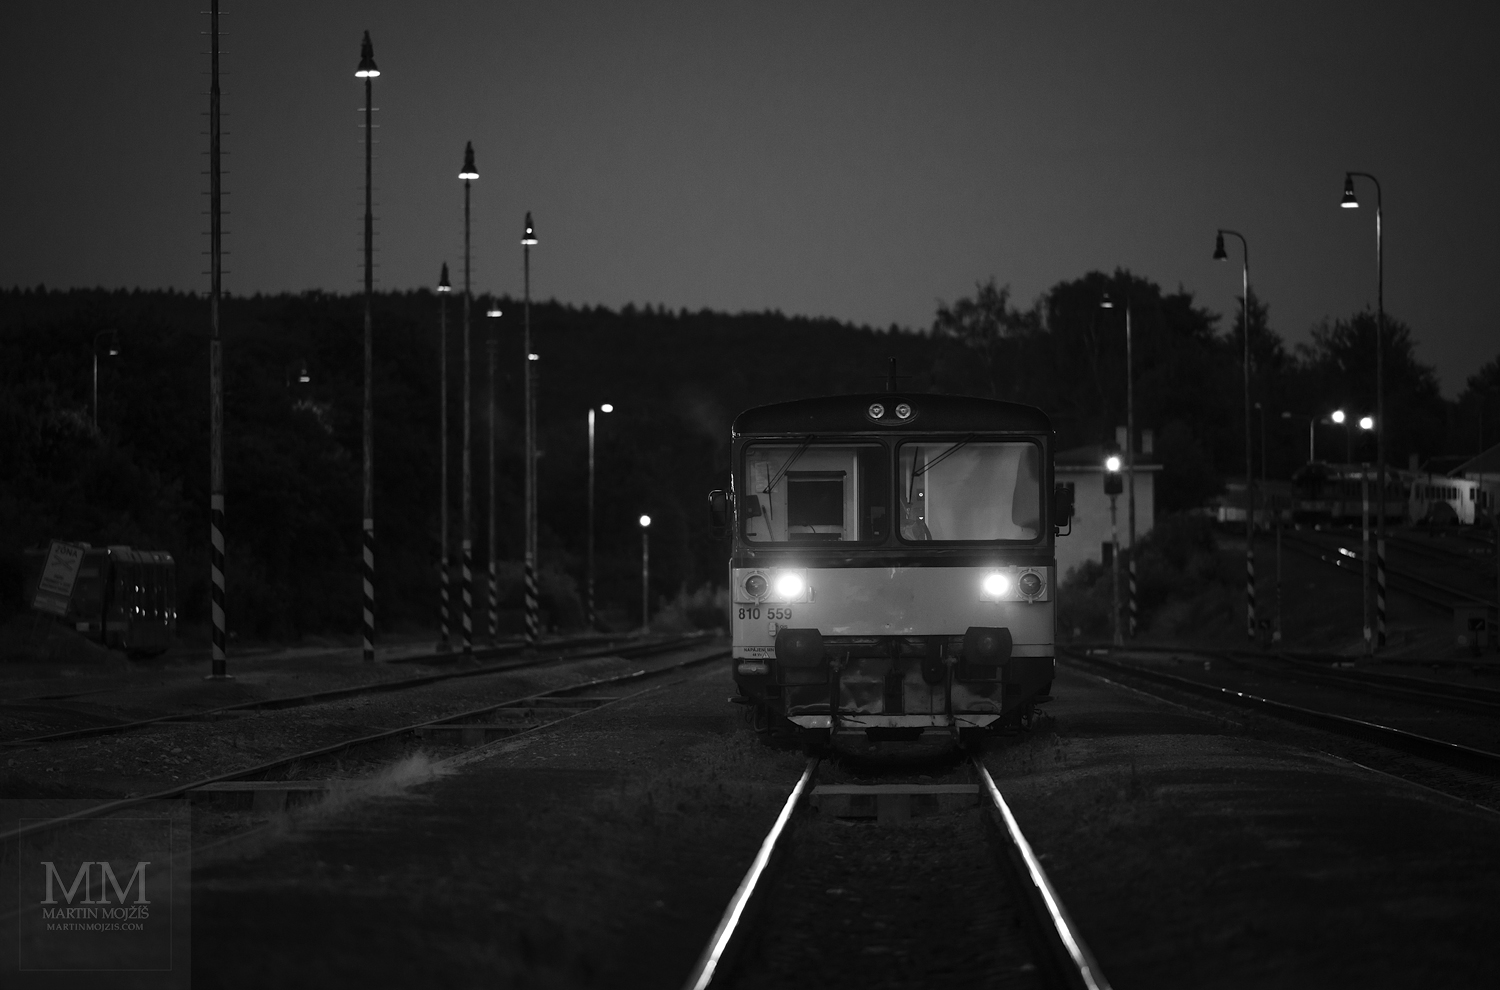 Motoráček a večerní nádraží. Umělecká černobílá fotografie s názvem VEČERNÍ MOTORÁČEK II. Fotograf Martin Mojžíš.